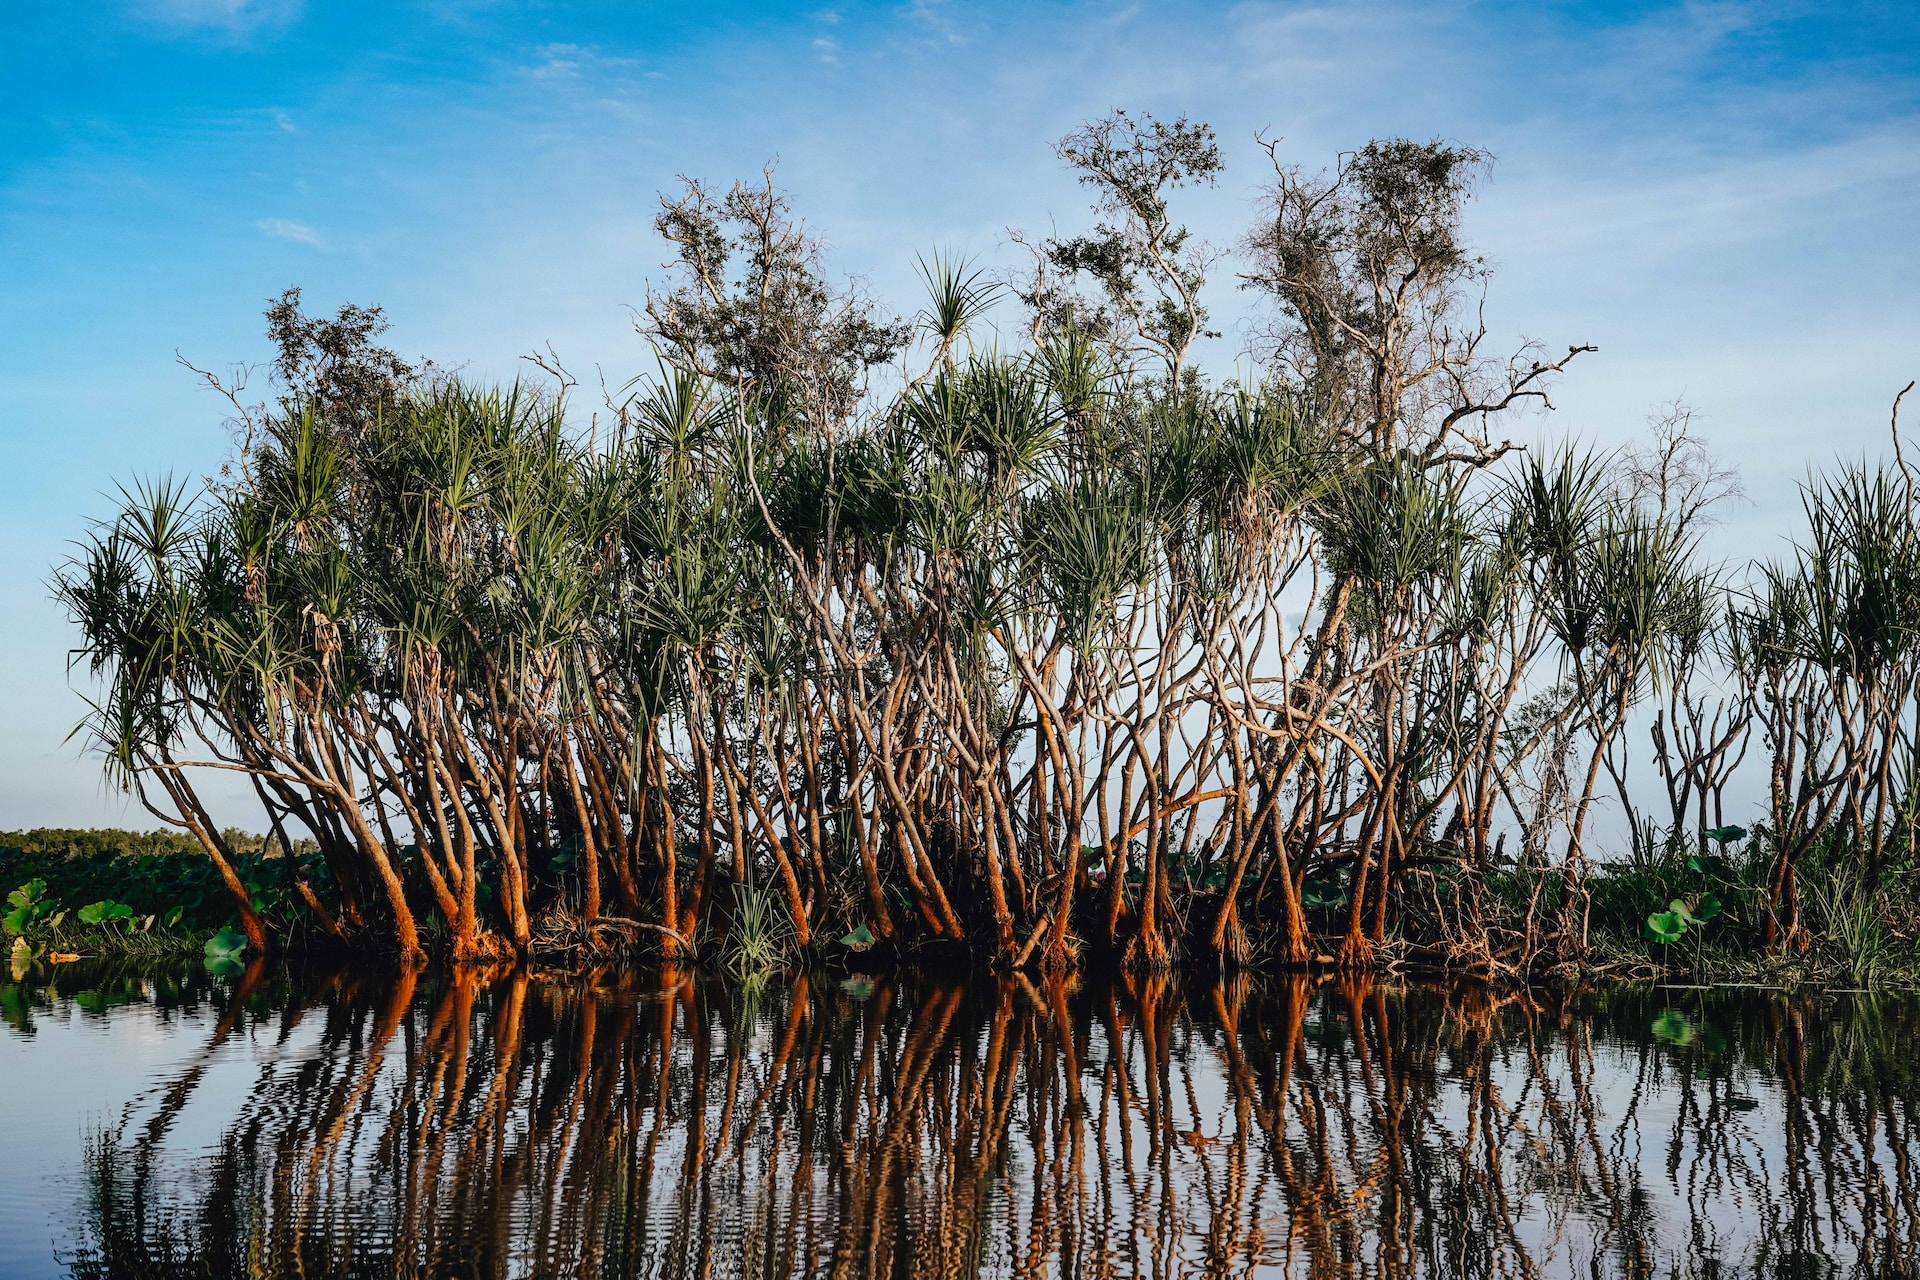 मैंग्रोव के बारे में 10 रोचक तथ्य जो आपको जानना जरूरी है| Fascinating Facts About Mangroves in Hindi